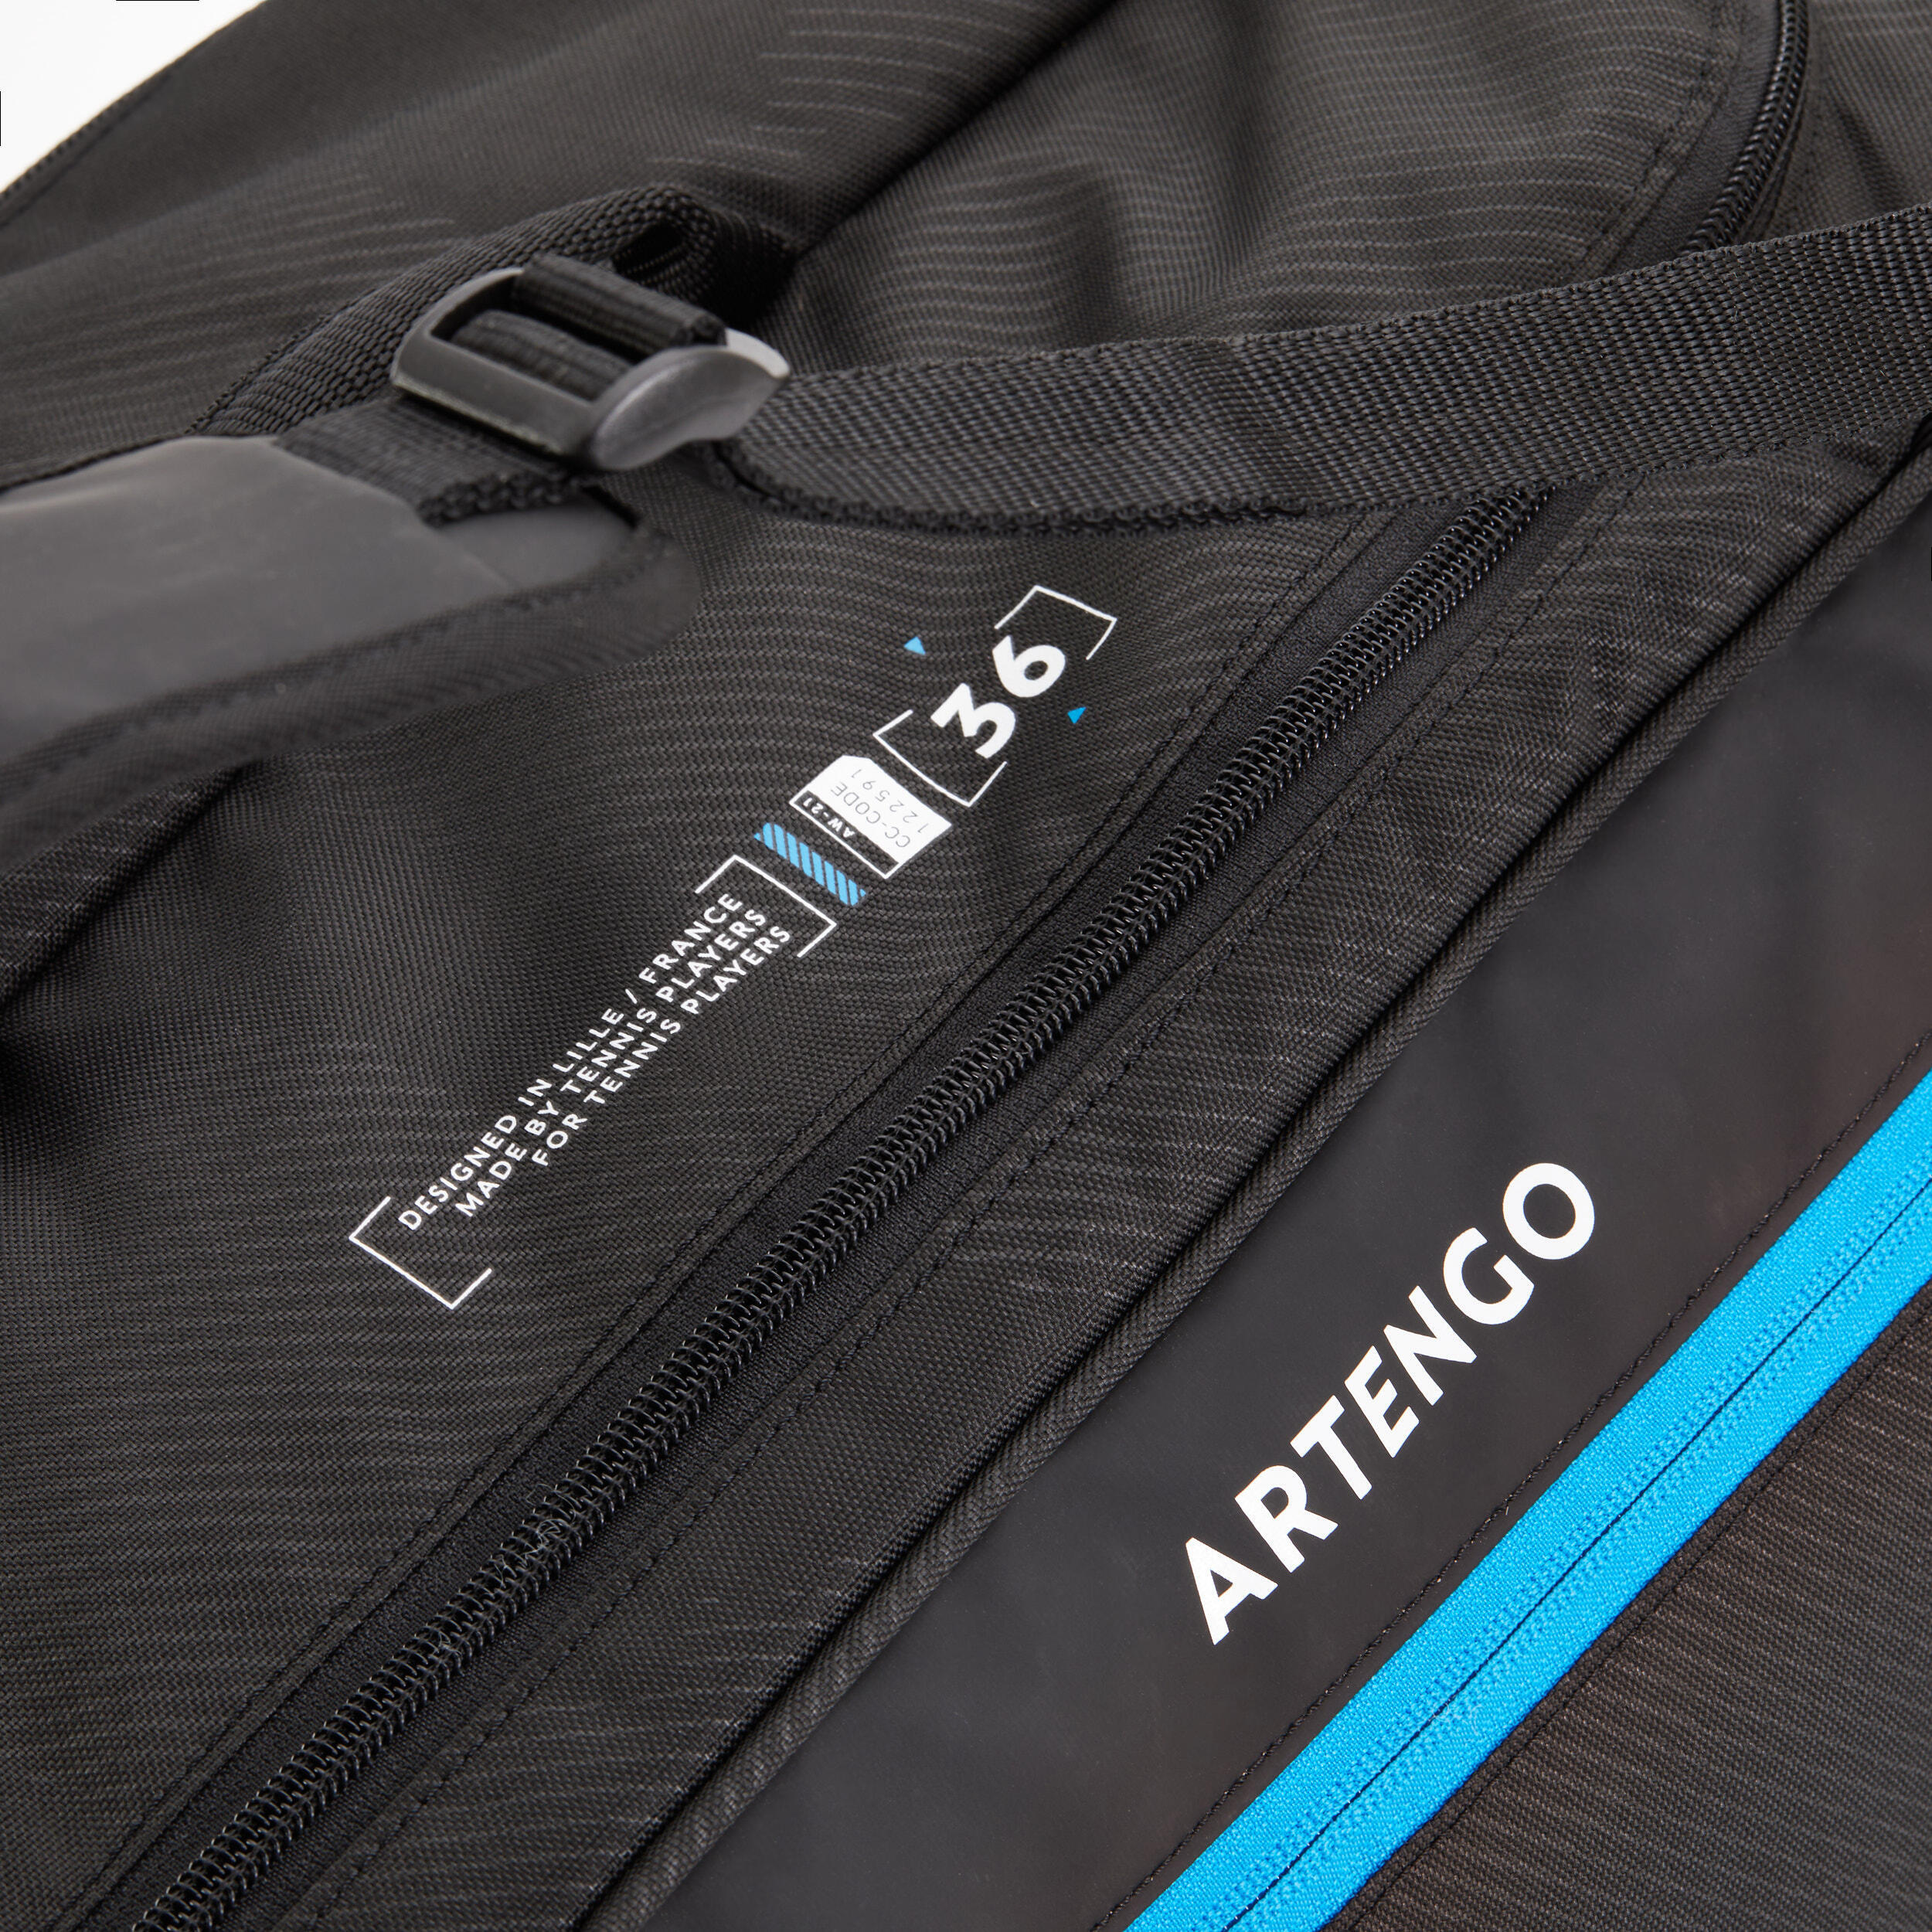 Теннисная сумка/рюкзак - 9R Team черный/синий ARTENGO, темно-голубой/черный